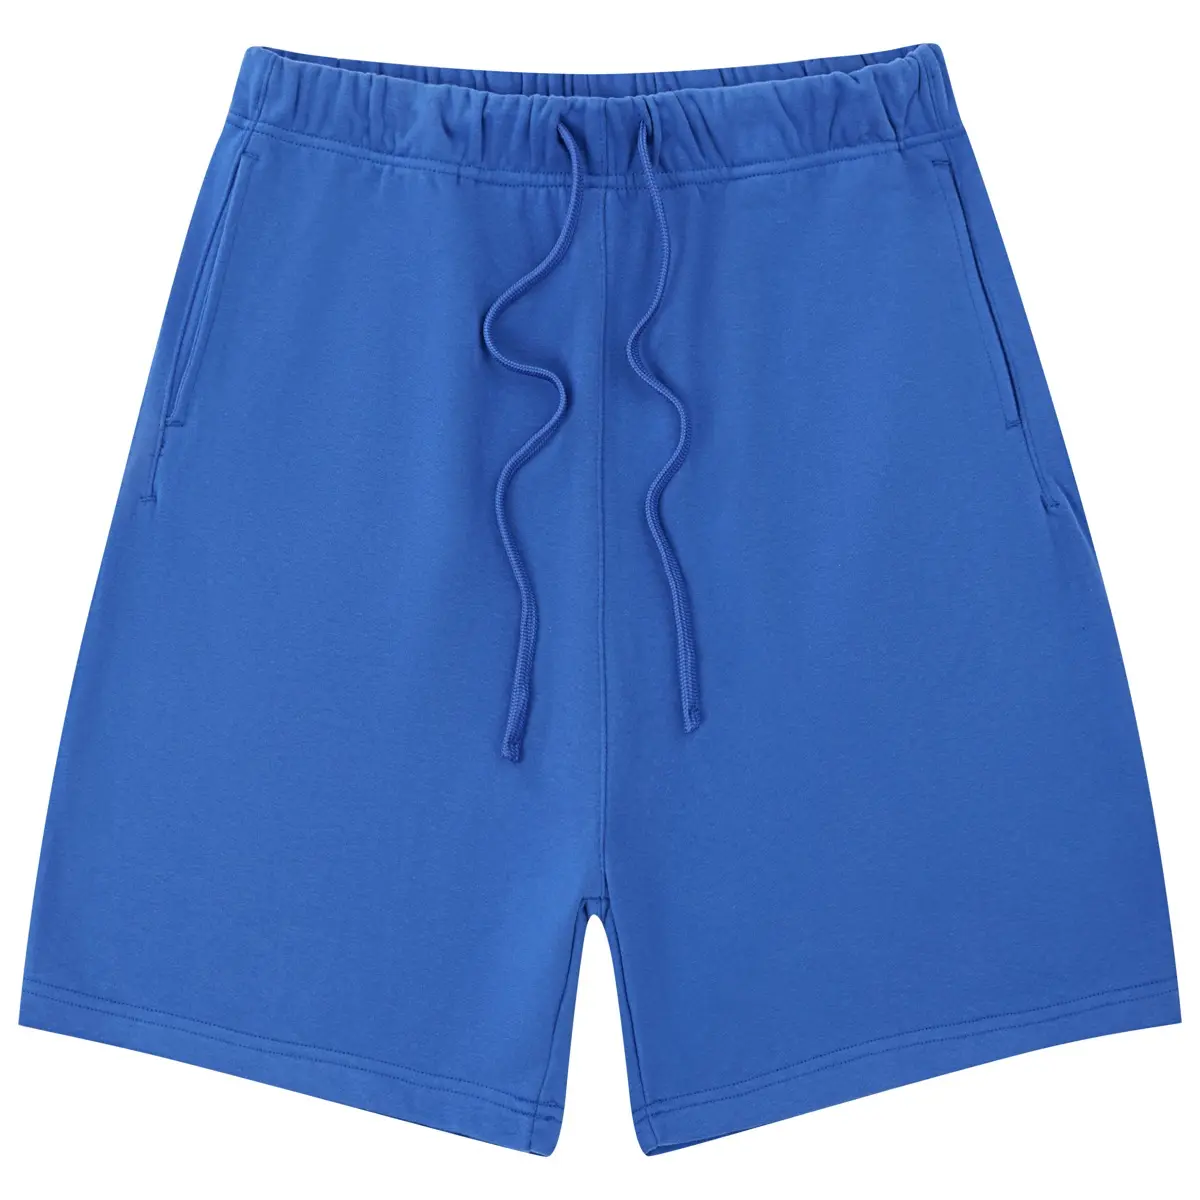 380gsm venta al por mayor de alta calidad logotipo personalizado Hombre Pantalones cortos transpirable ropa de calle pantalones cortos de verano de algodón de los hombres